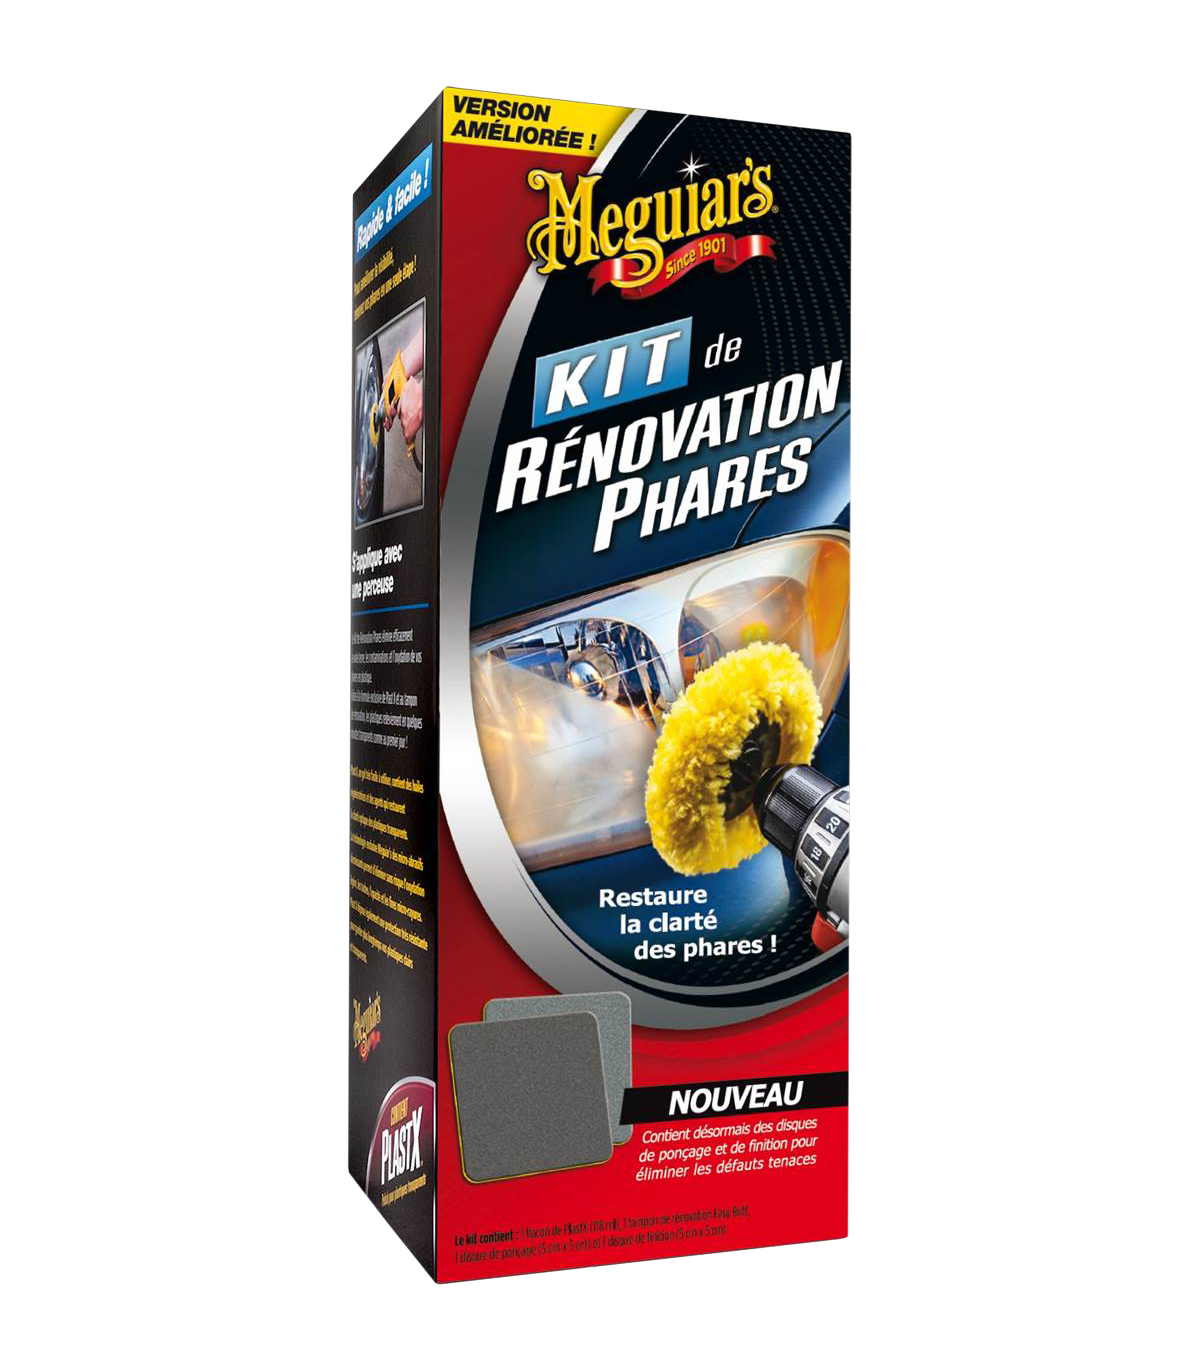 Le Kit de Rénovation Phares de Meguiar's - Rs Detailing